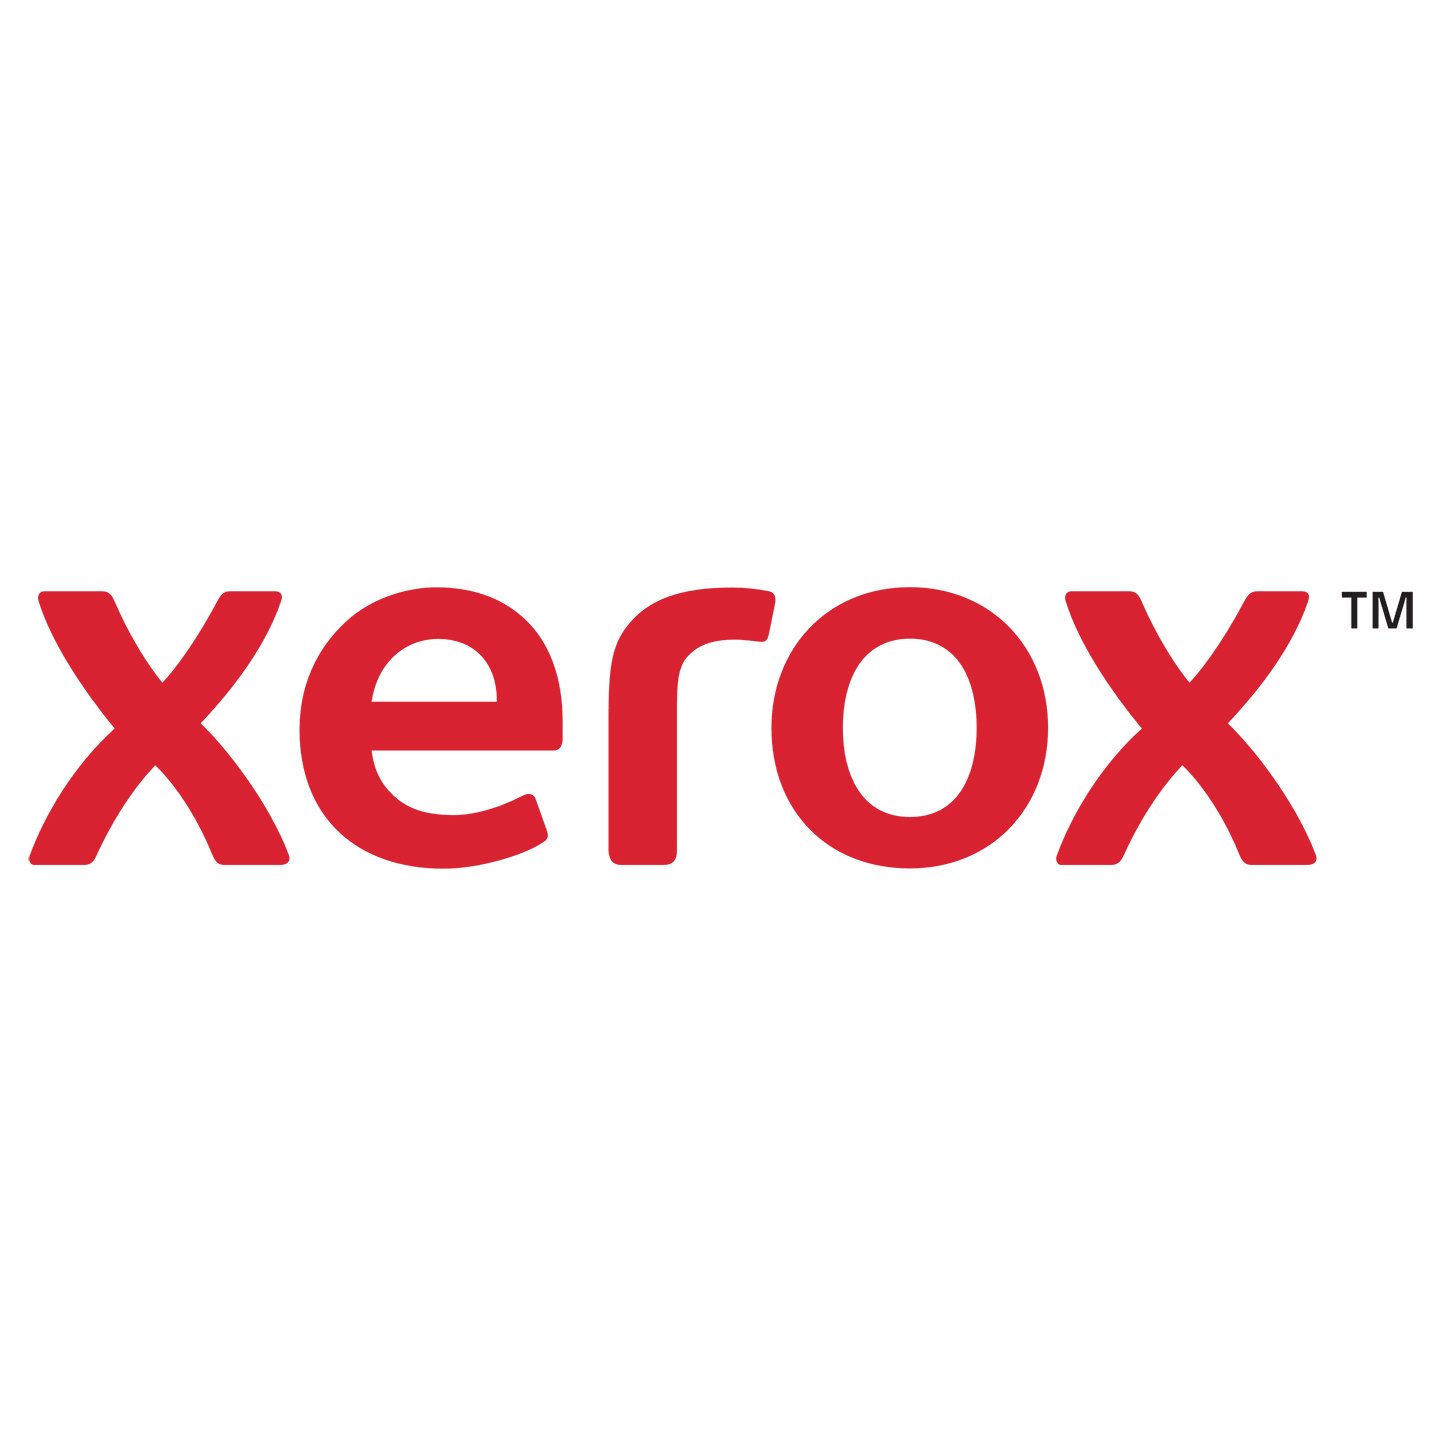 Xerox-logo copy.jpg